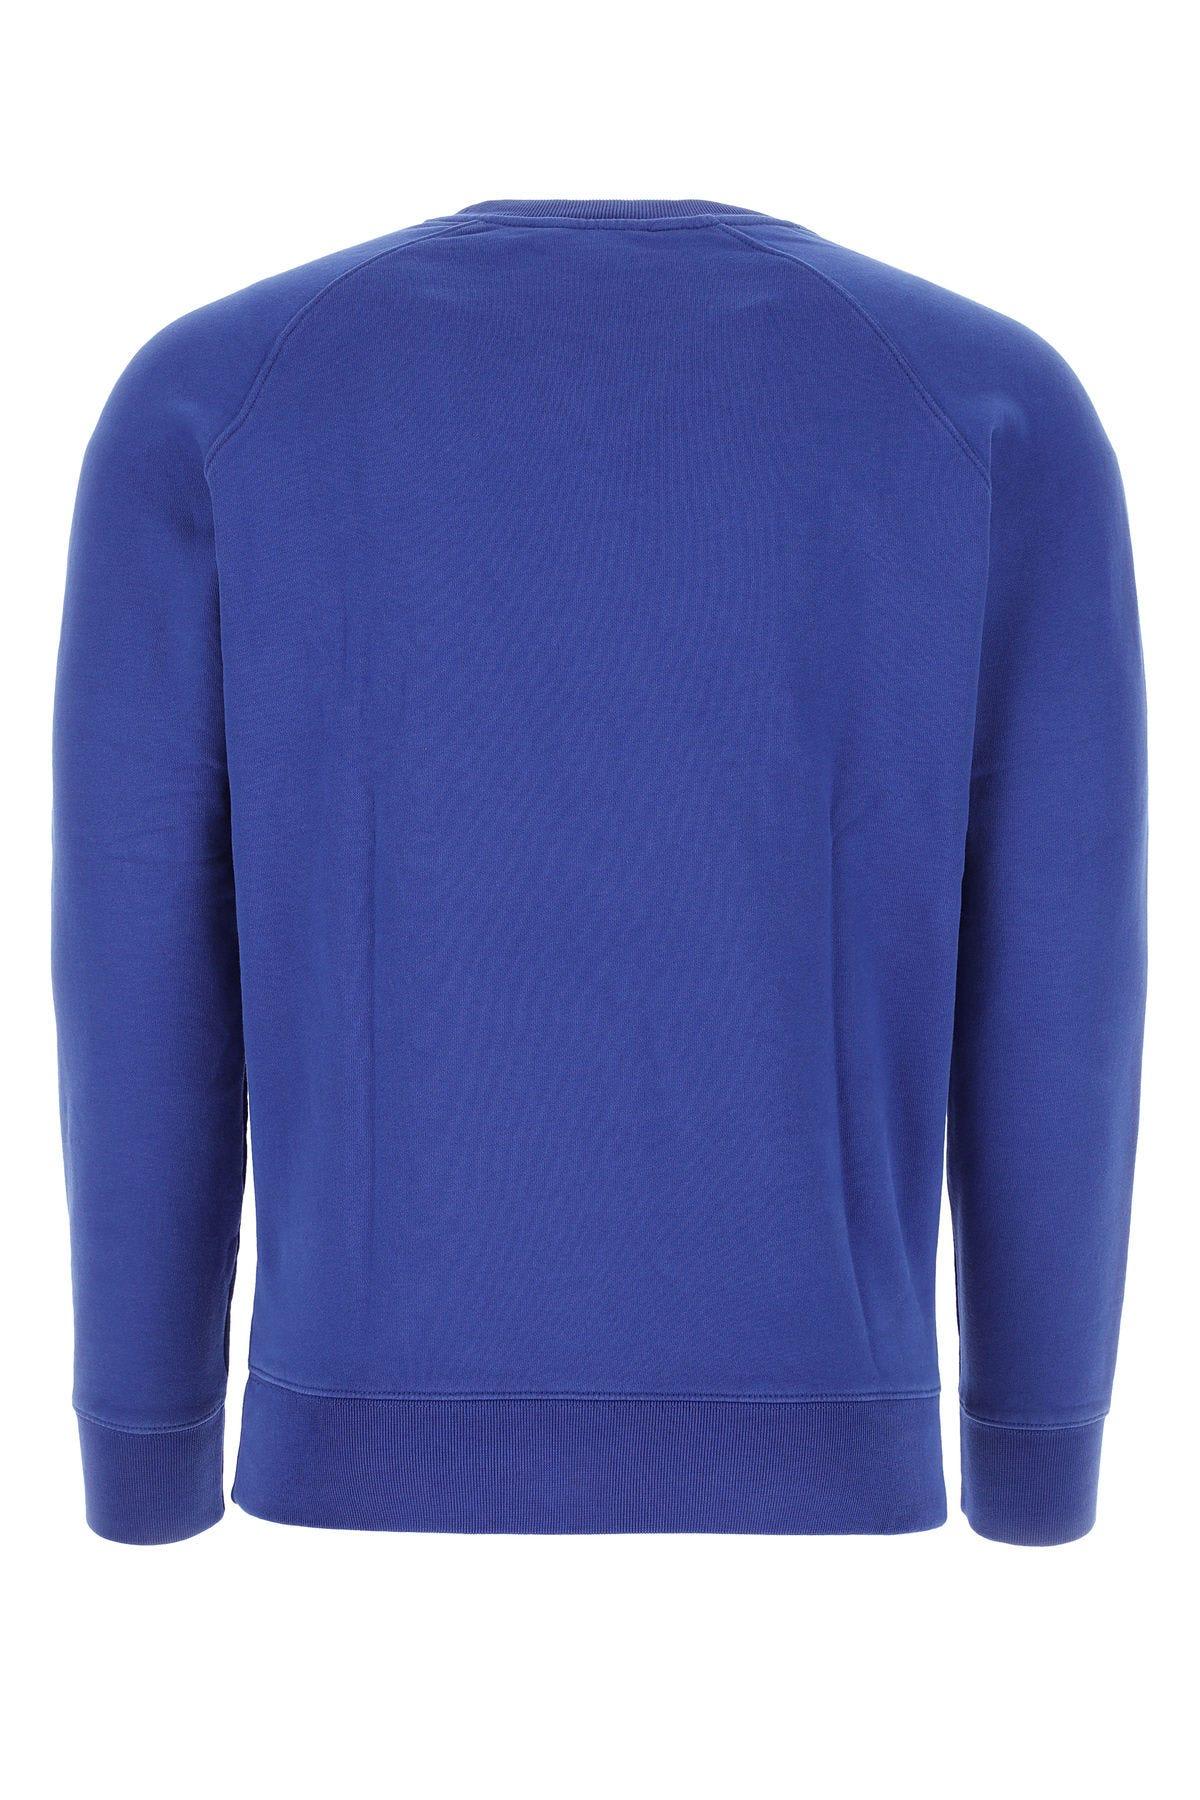 Shop Maison Kitsuné Blue Cotton Sweatshirt In Navy